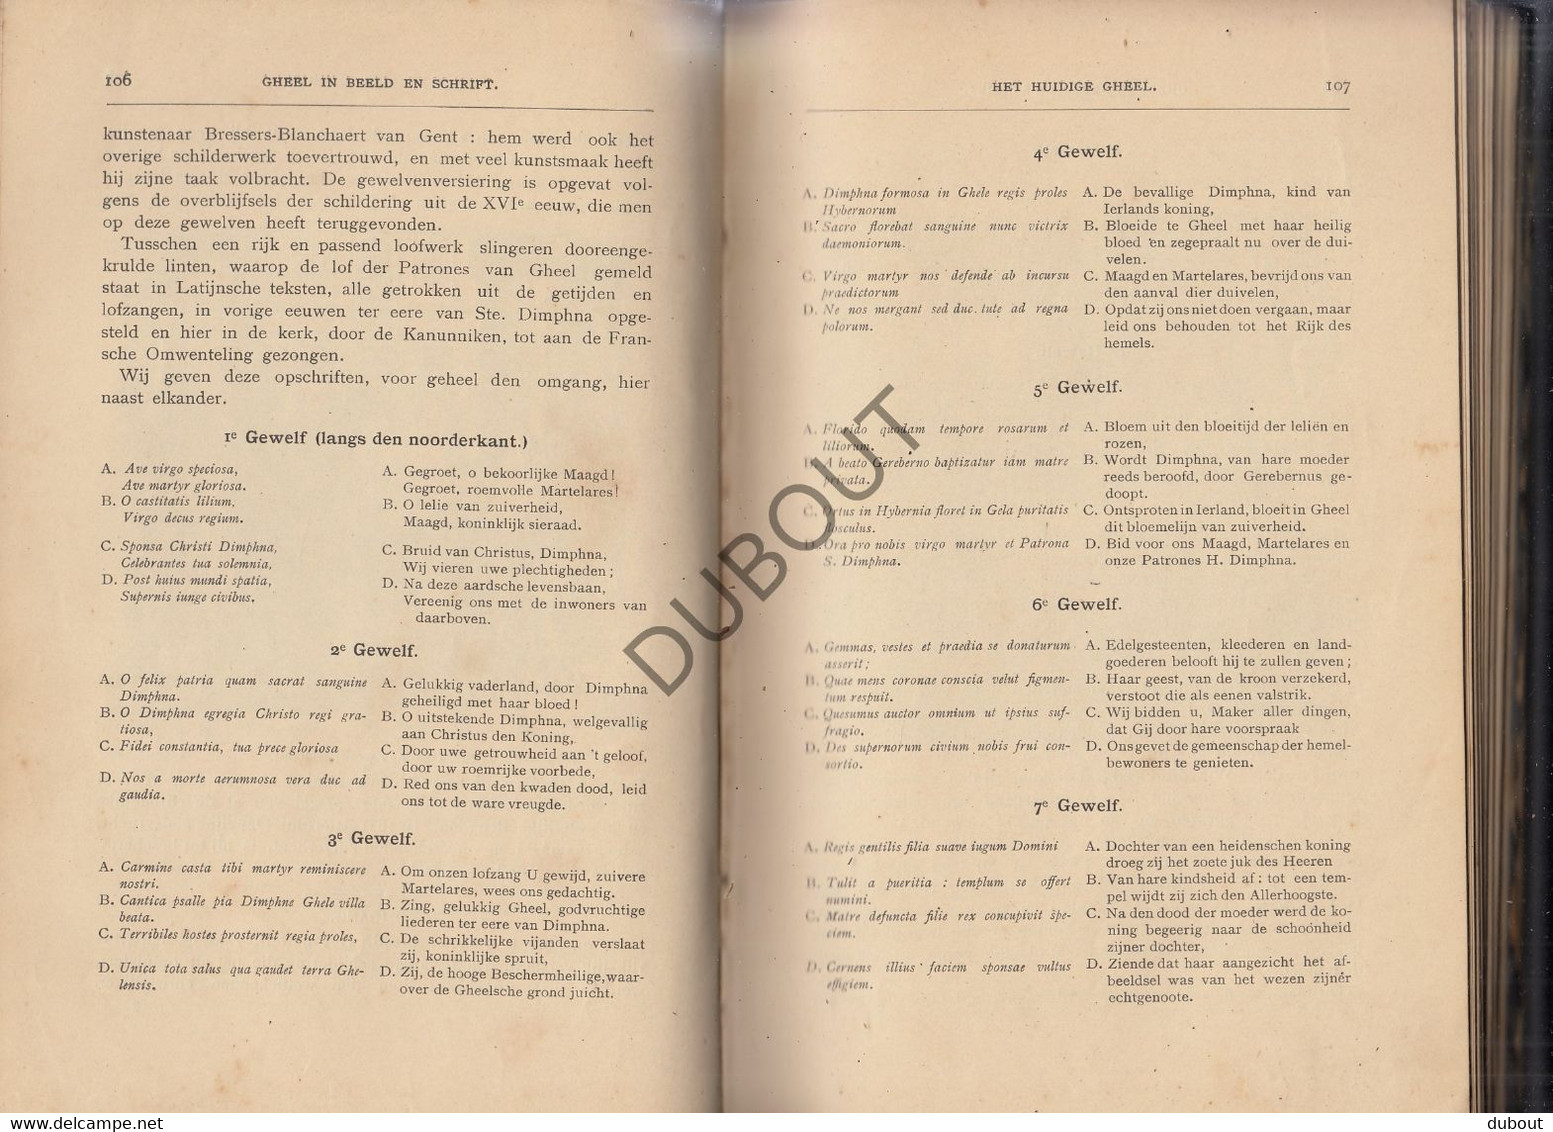 GHEEL/GEEL - Gheel in Beeld en Schrift - G. Janssens - 1900 - Tunhout - Met illustraties   (S214)